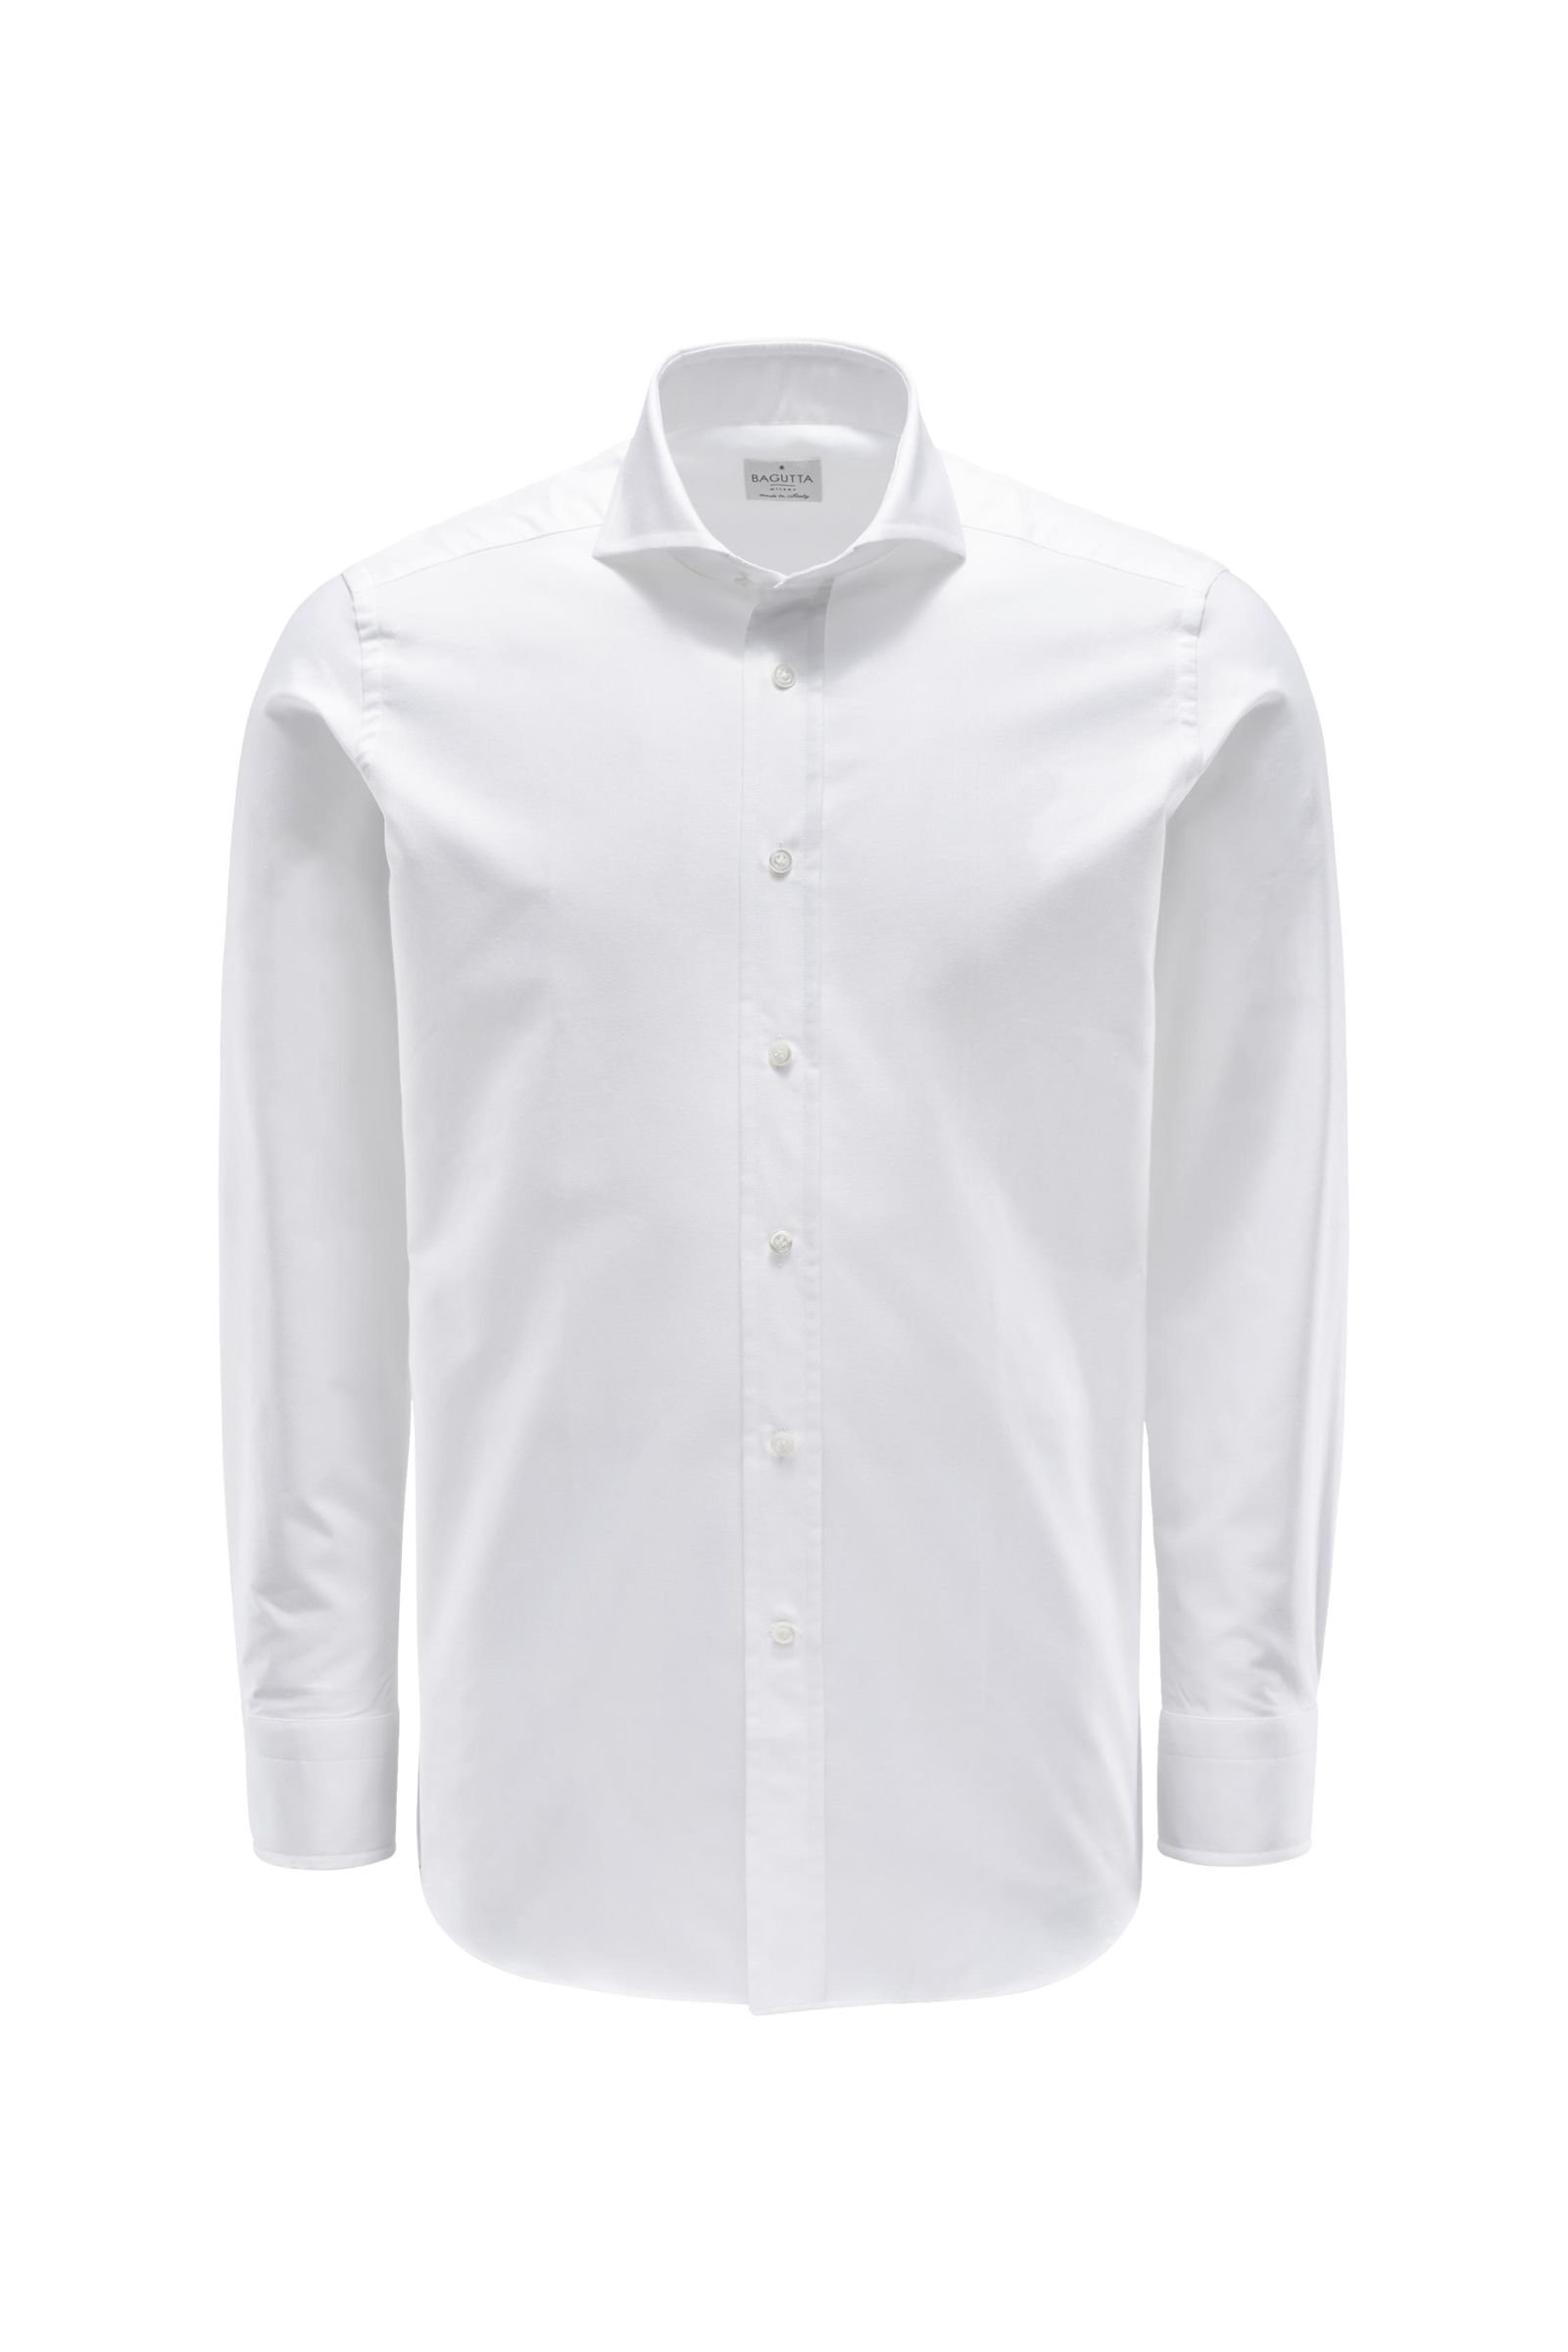 Oxford shirt 'Windsor' shark collar white